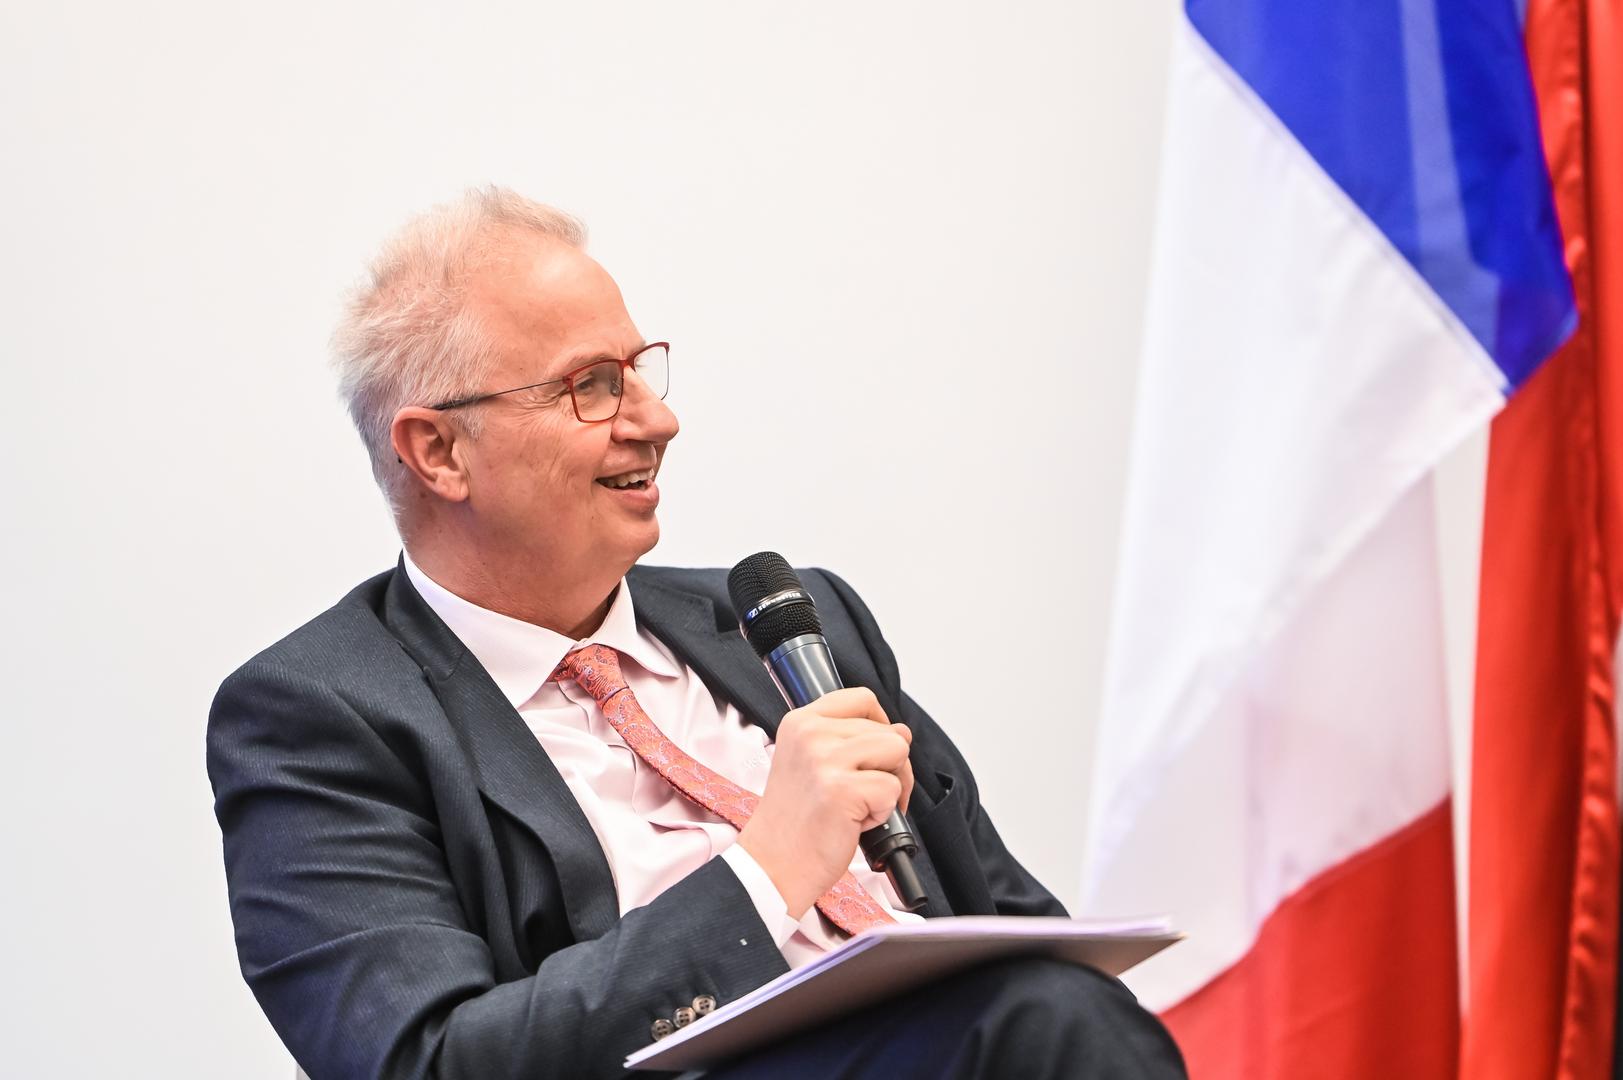 Európa Klub: a francia külpolitika aktualitásai - 6 aktualis kihivasok a francia kulpolitikaban 2022 2